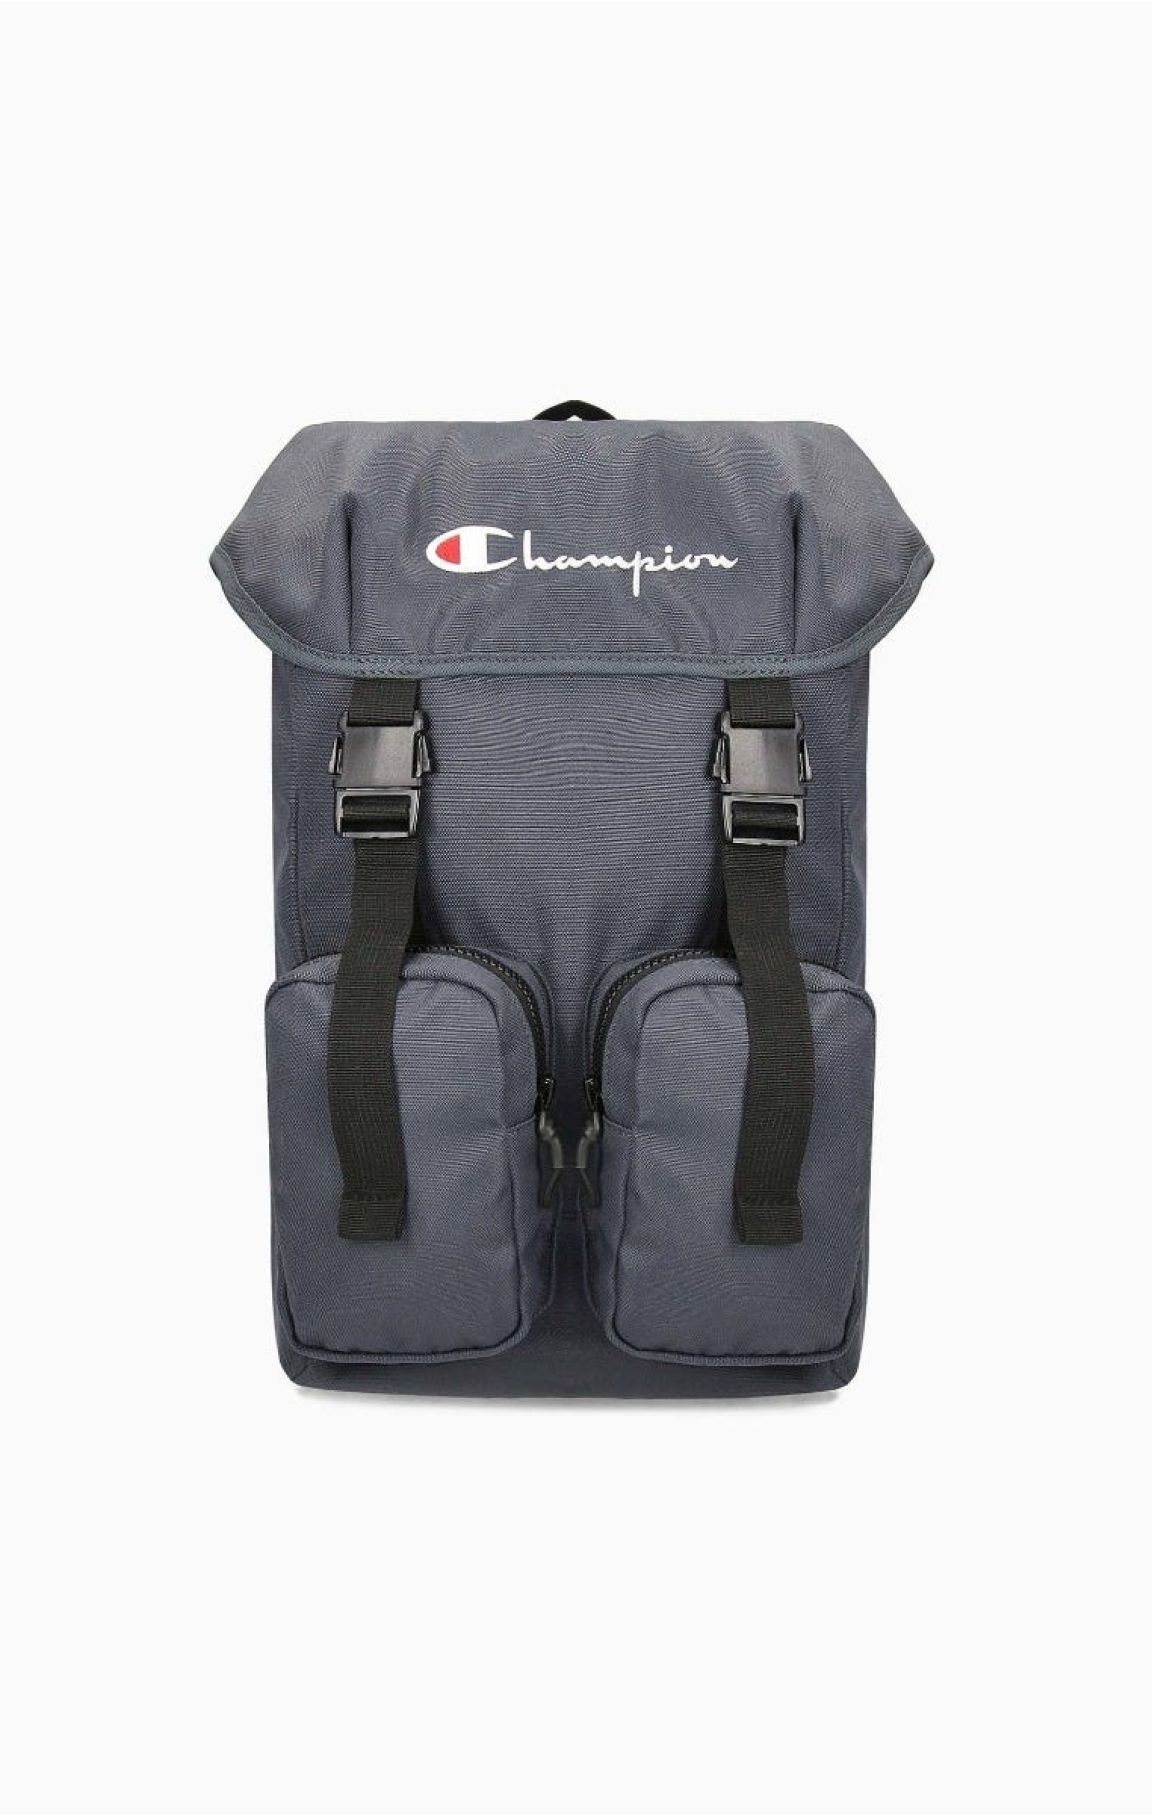 804155 Visiter la boutique ChampionChampion Athletic Bags Sacs de Sport Mixte Adulte 